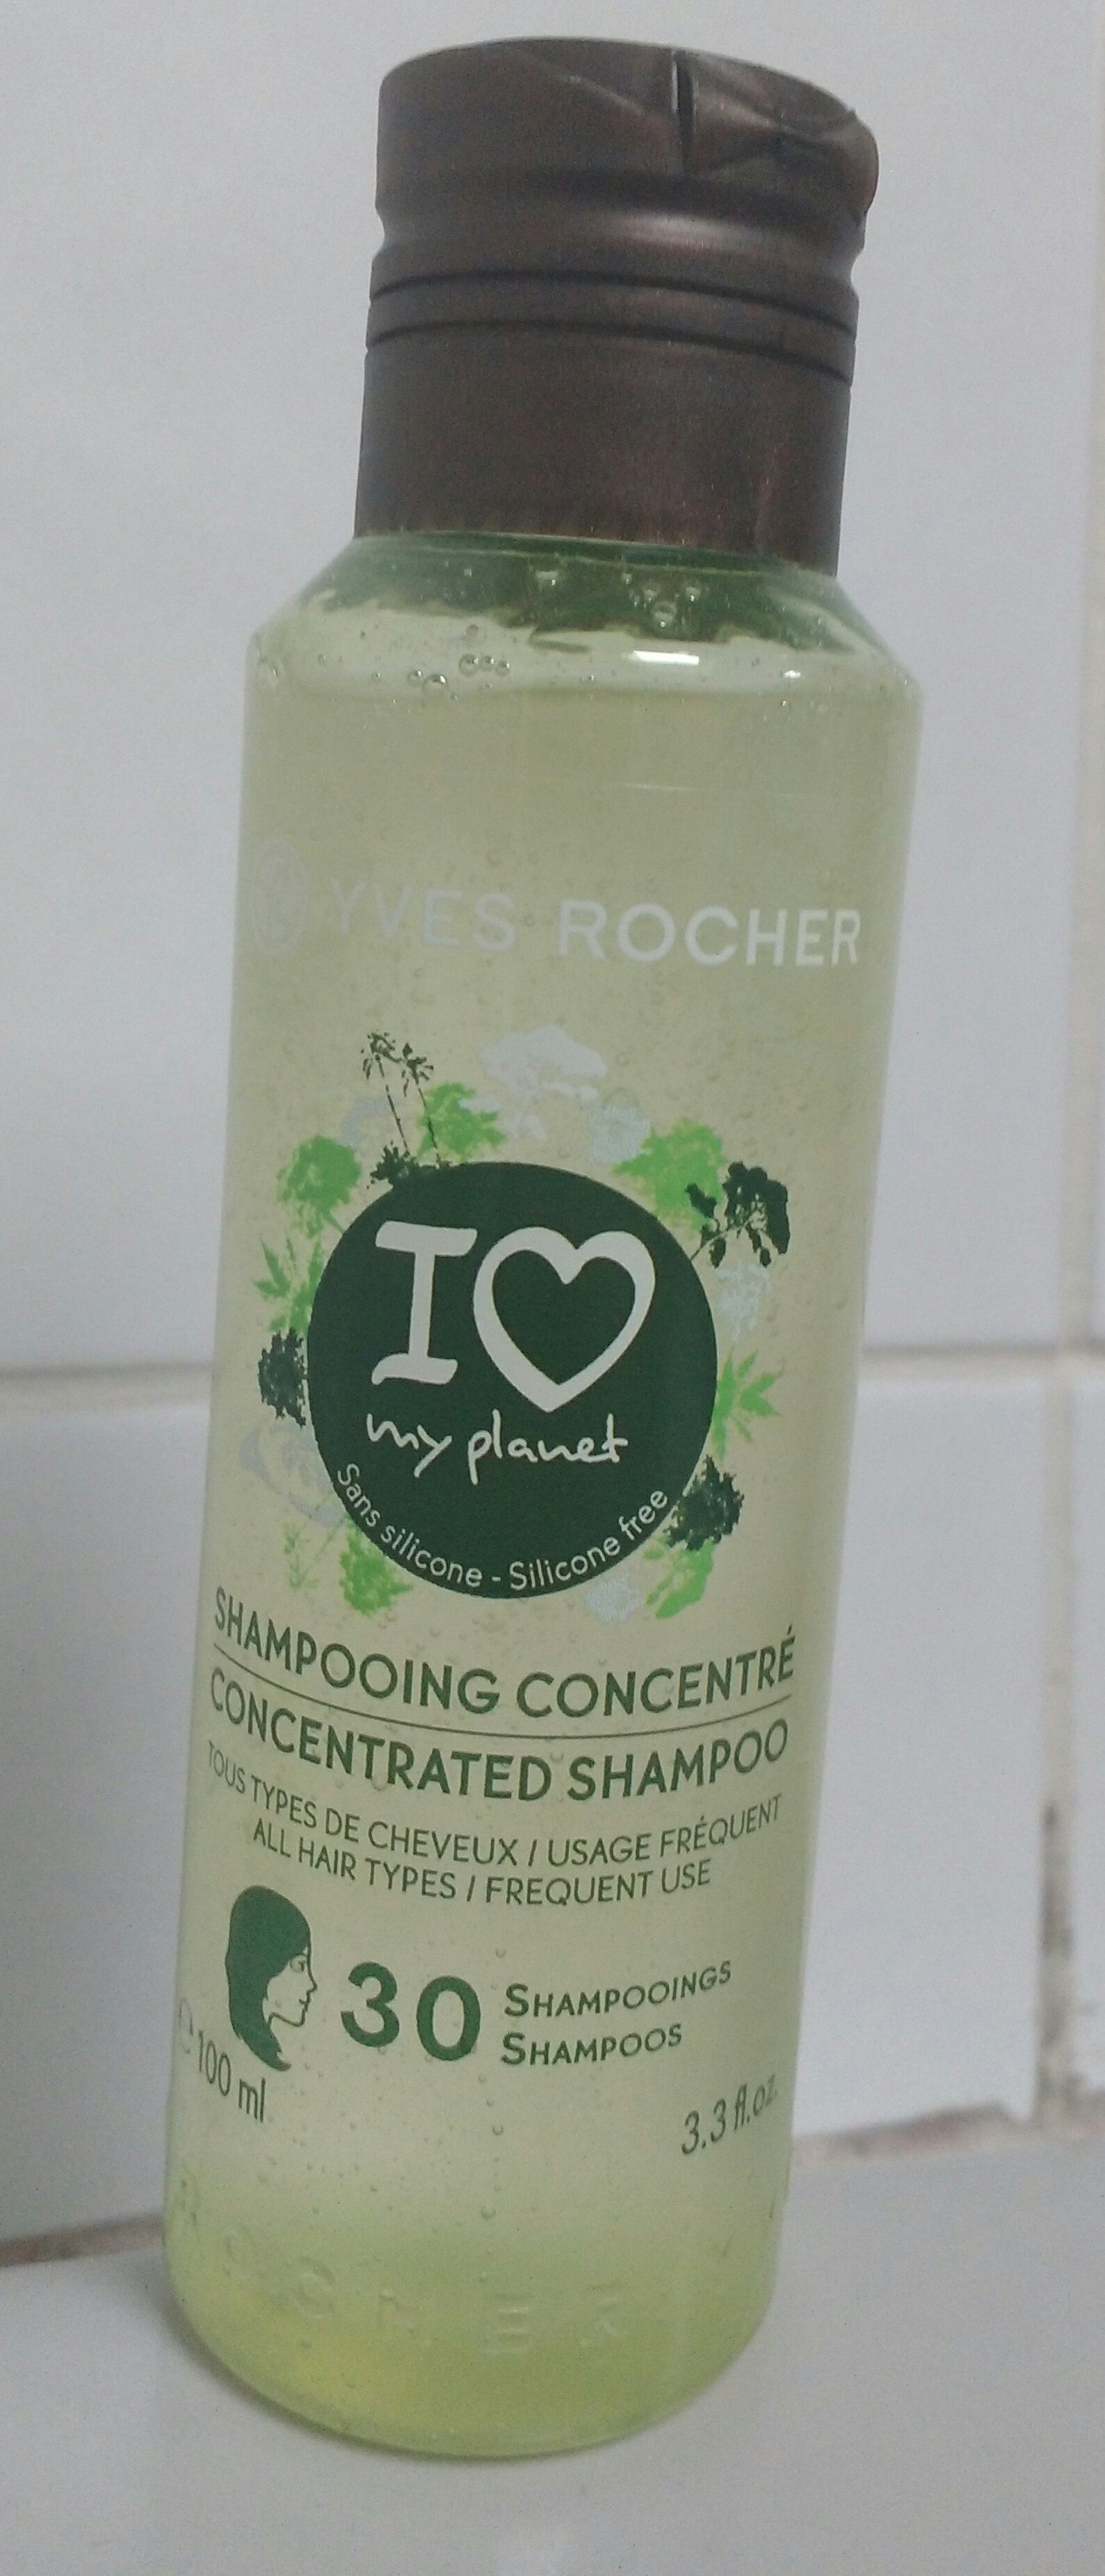 Shampooing concentré - Tous types de cheveux - Produkt - fr